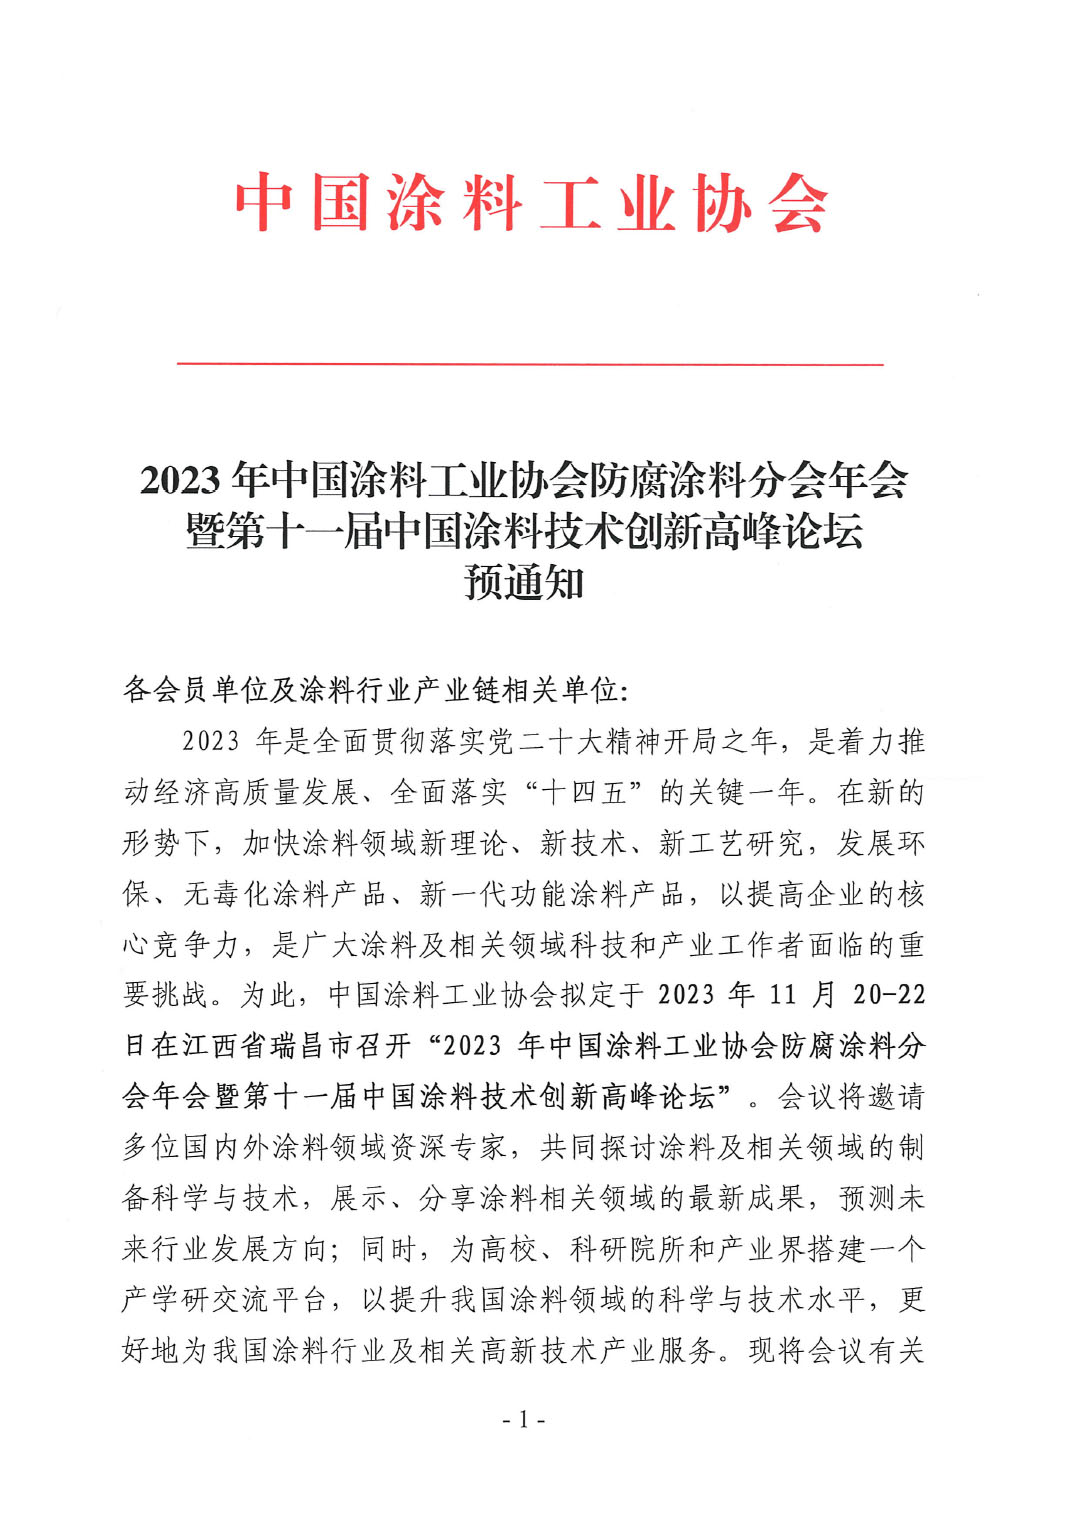 2023年中国涂料工业协会防腐涂料分会年会预通知20231025(1)-1